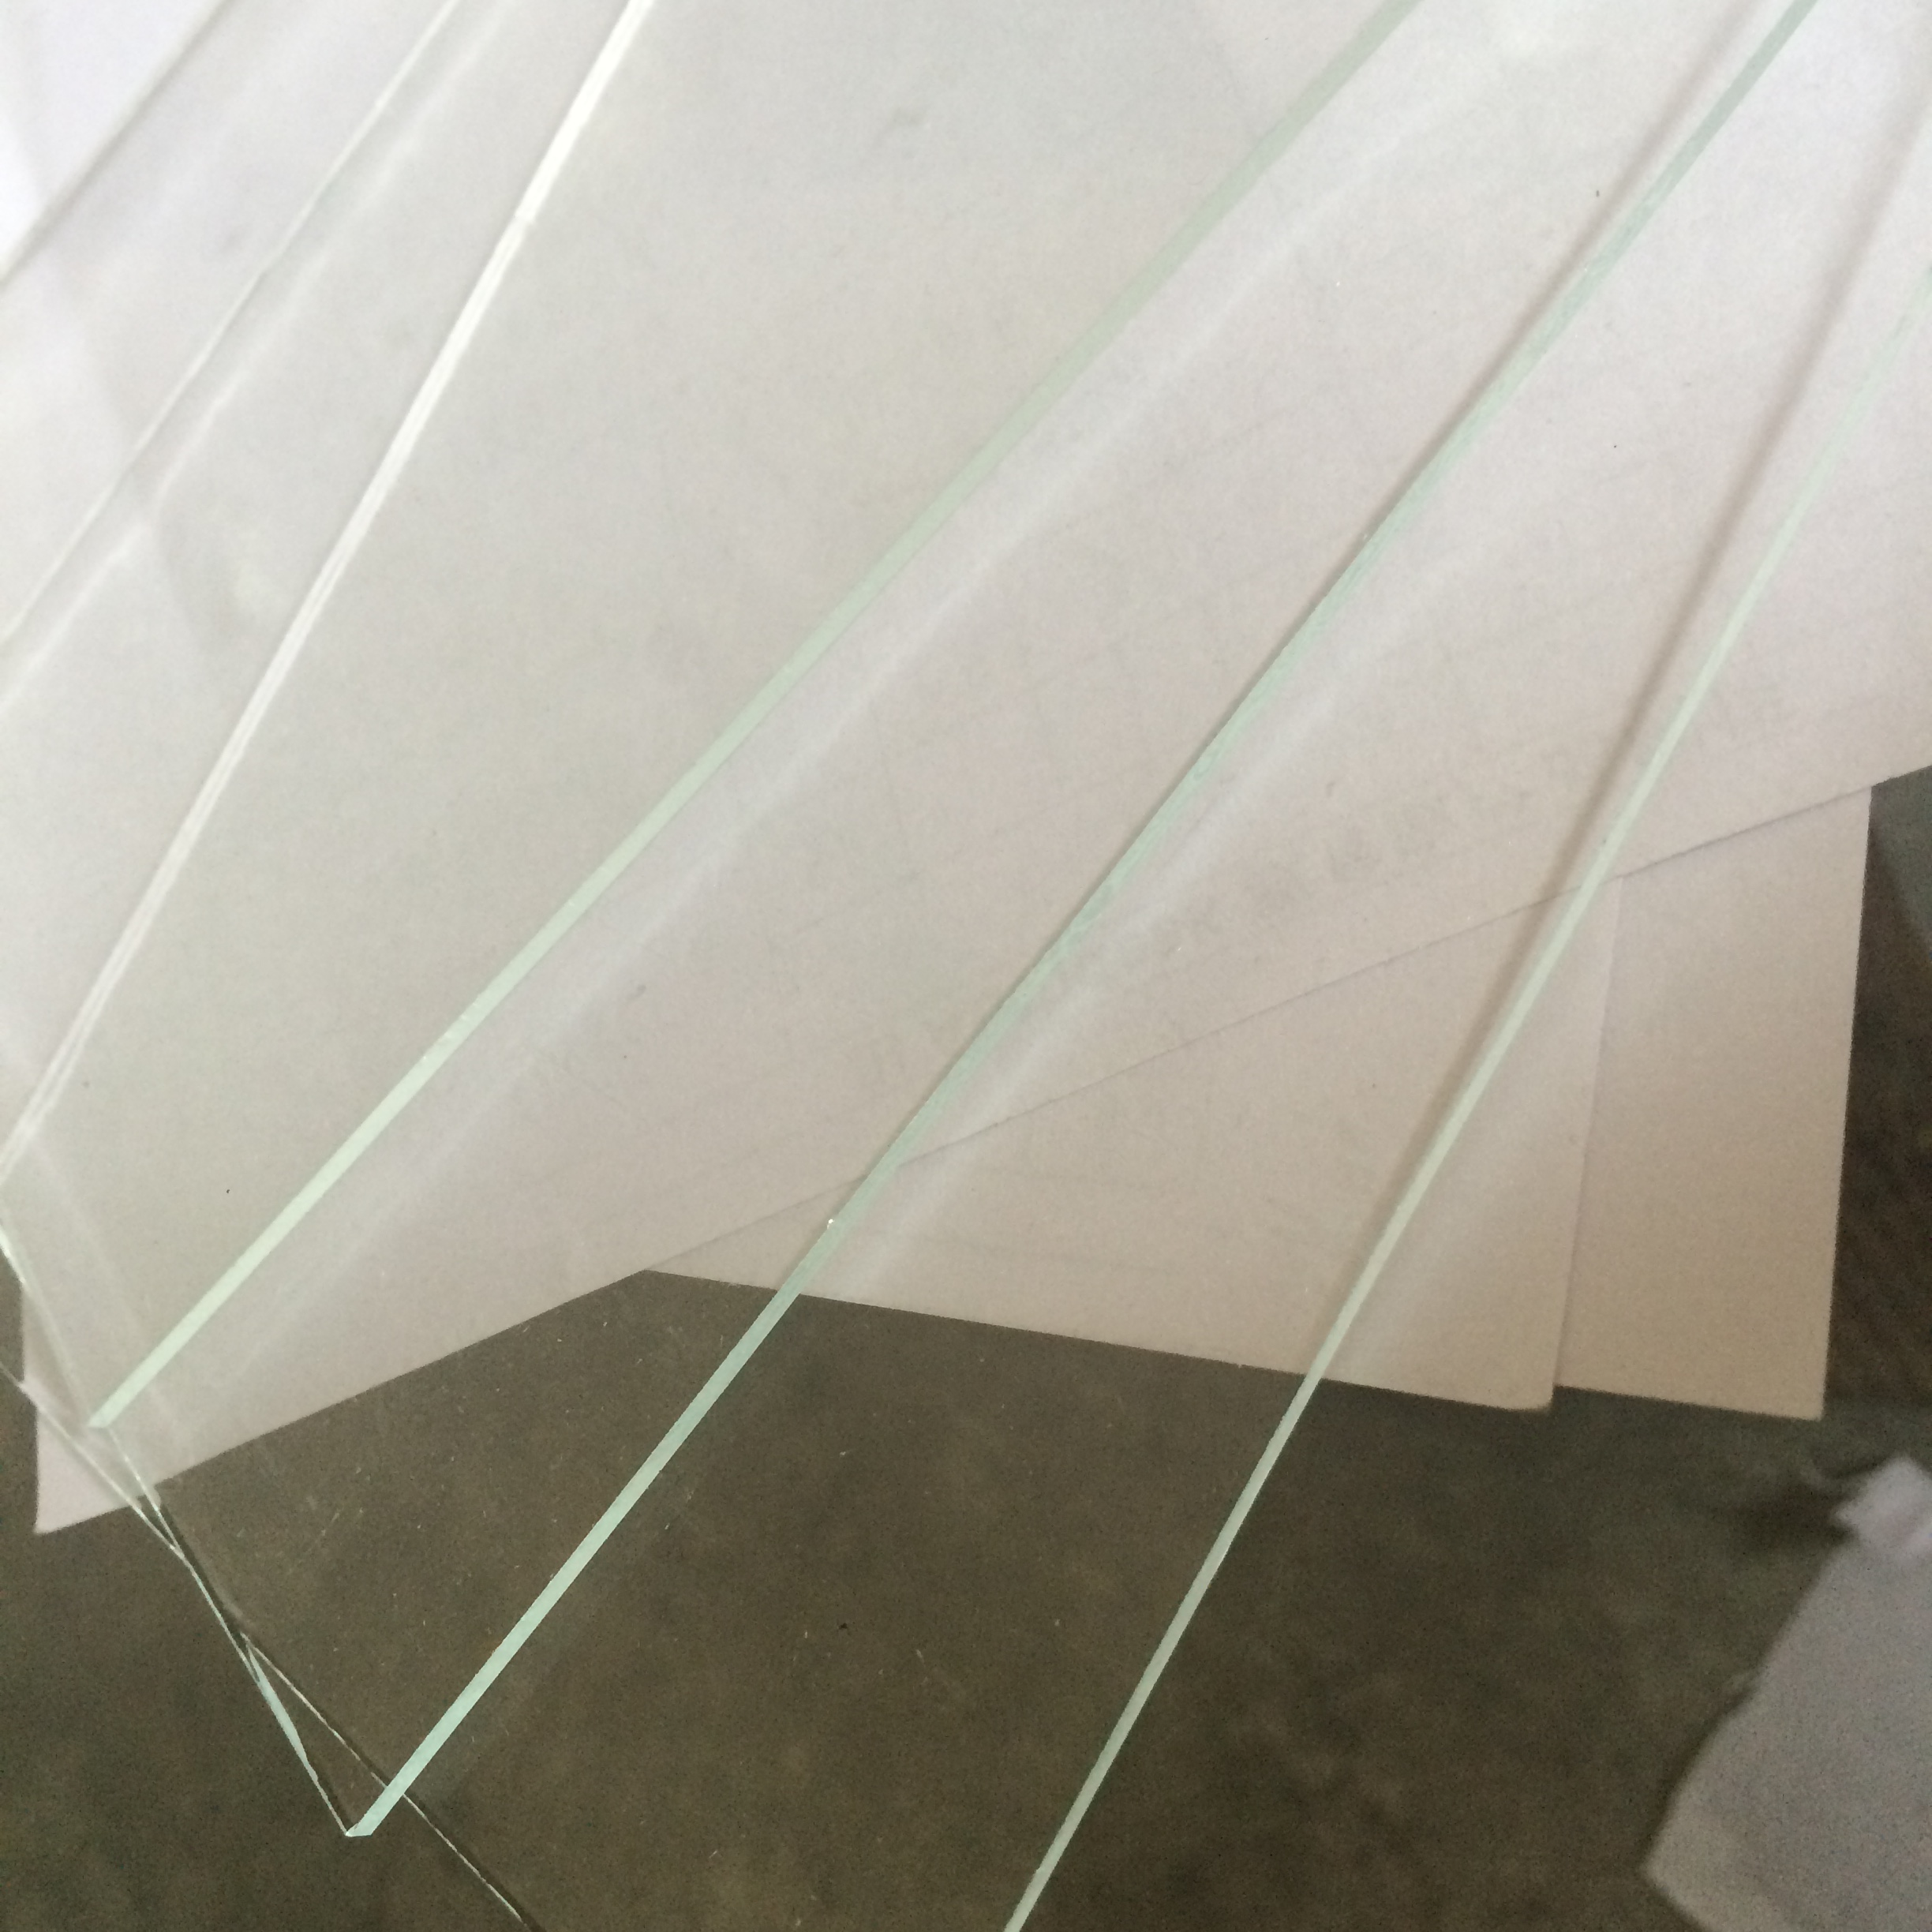 超白玻璃图片-玻璃图库-中玻网